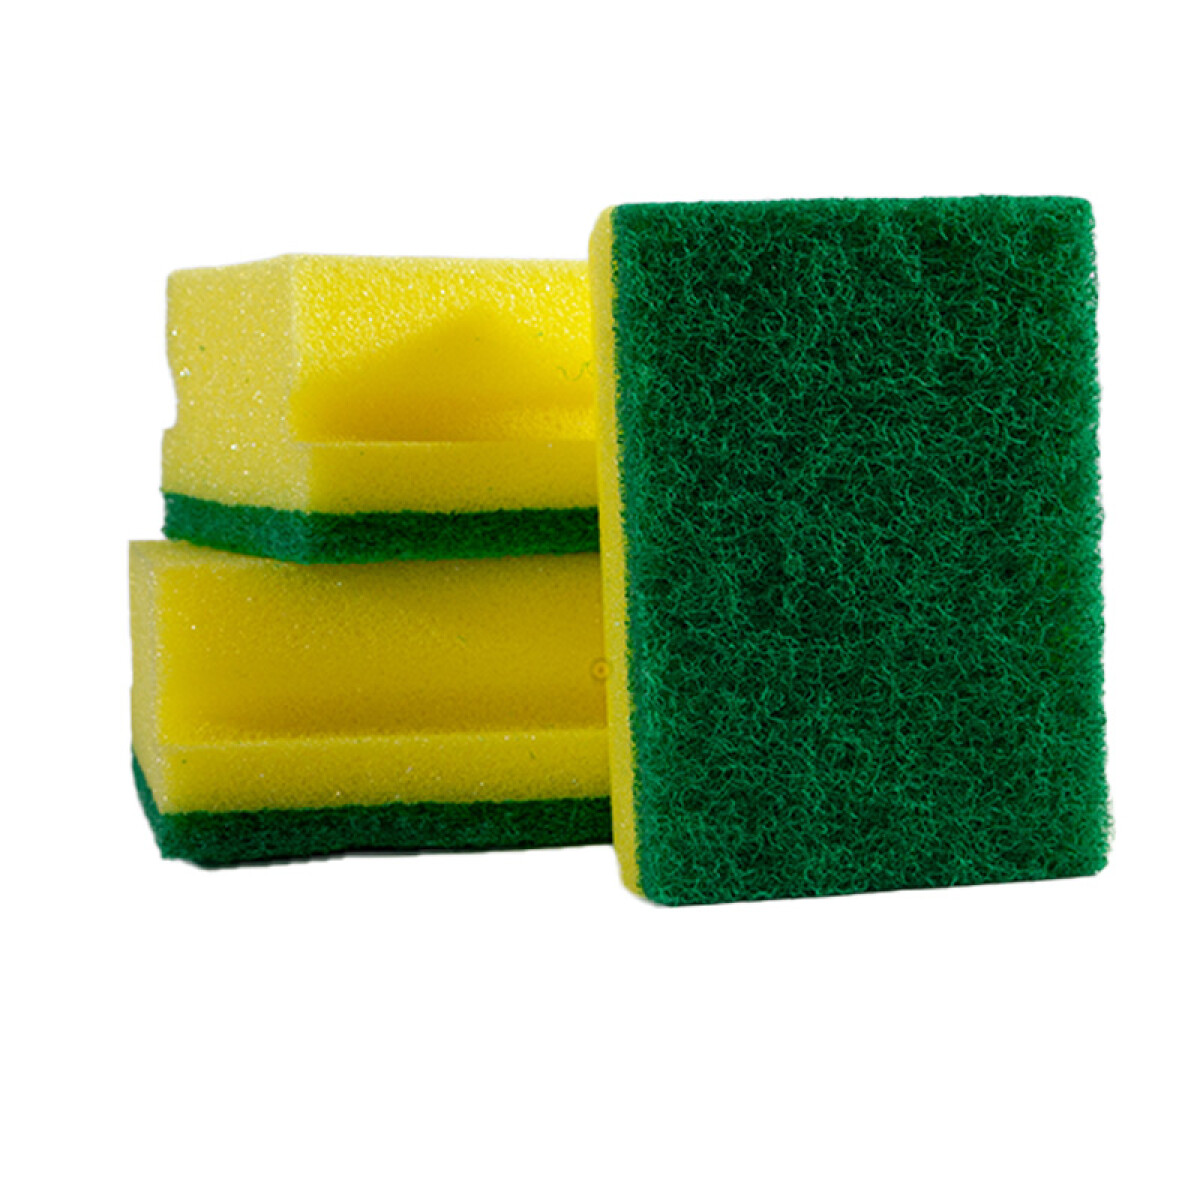 Esponja de cocina gruesa x 3 unidades - amarilla y verde 